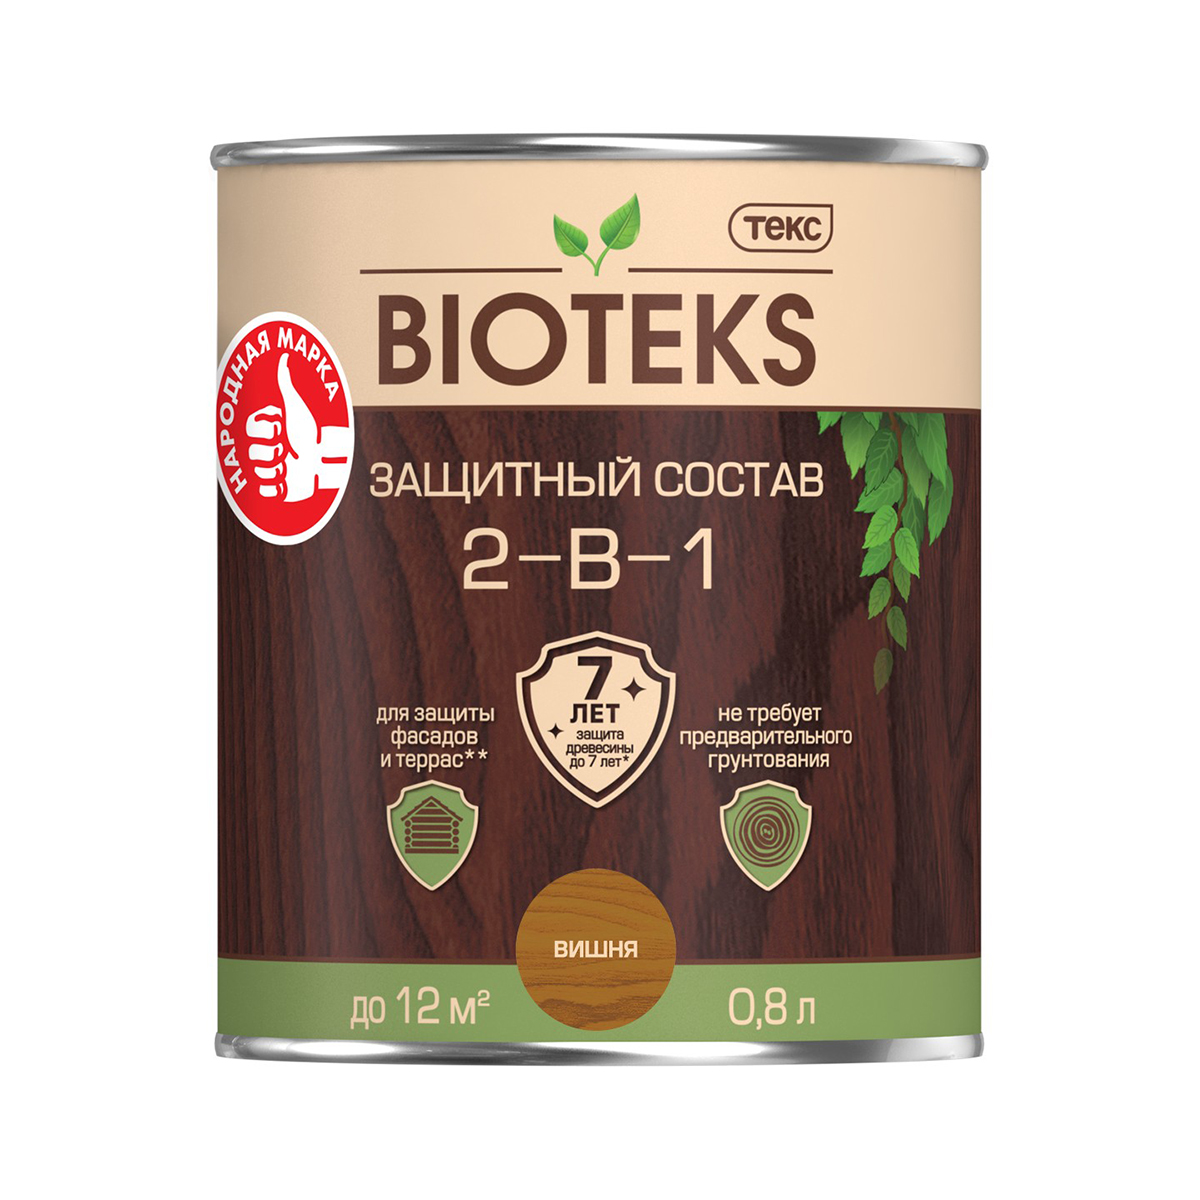 Биотекс вишня  0,8 л (1/14) защитный состав  2 в 1 "bioteks"